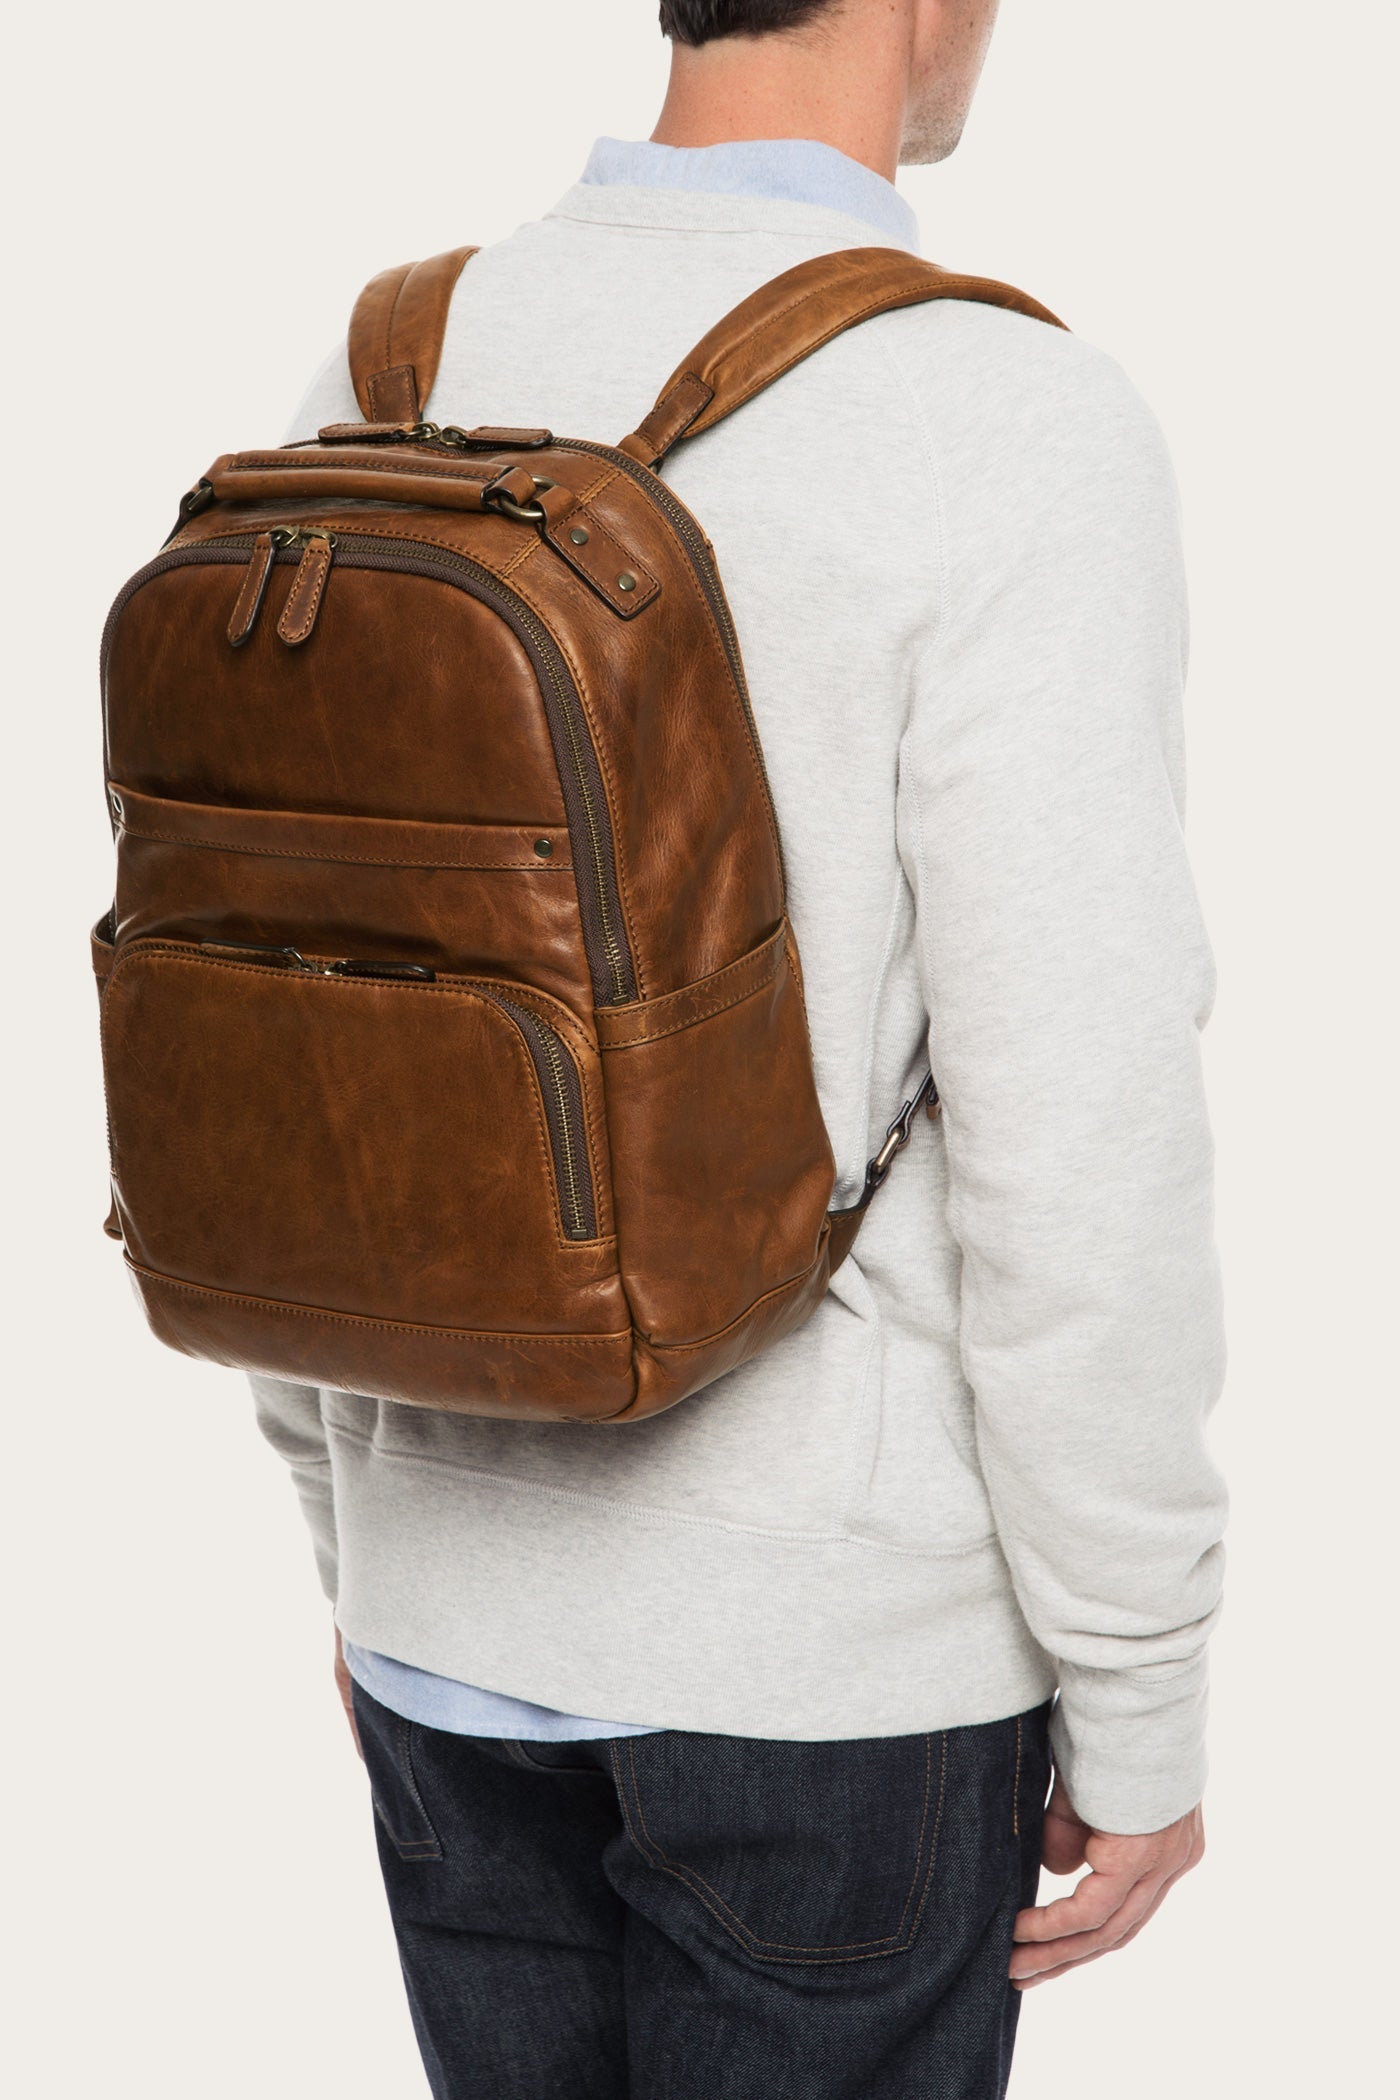 Frye Logan Leather Backpack, $448, Nordstrom